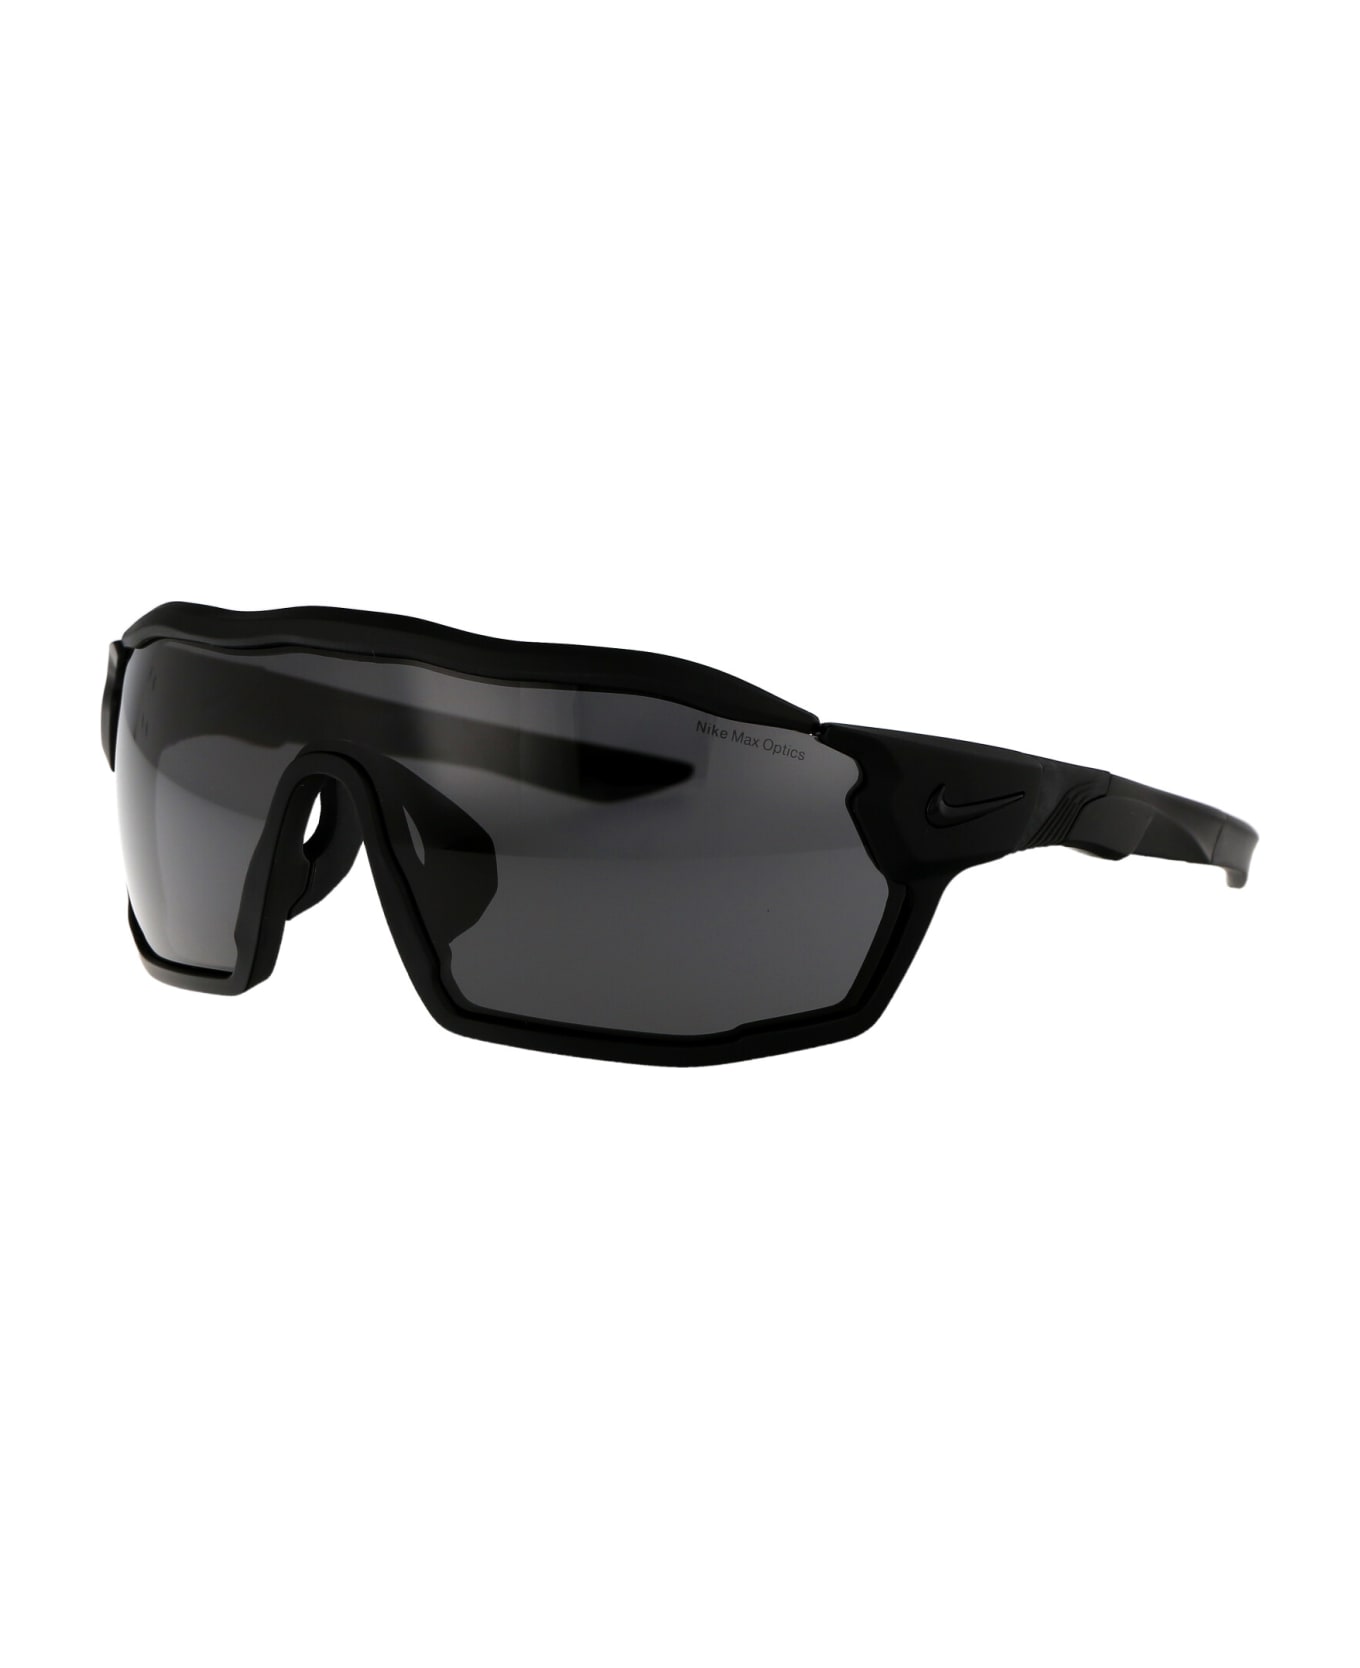 Nike Show X Rush Sunglasses - 010 DARK GREY MATTE BLACK